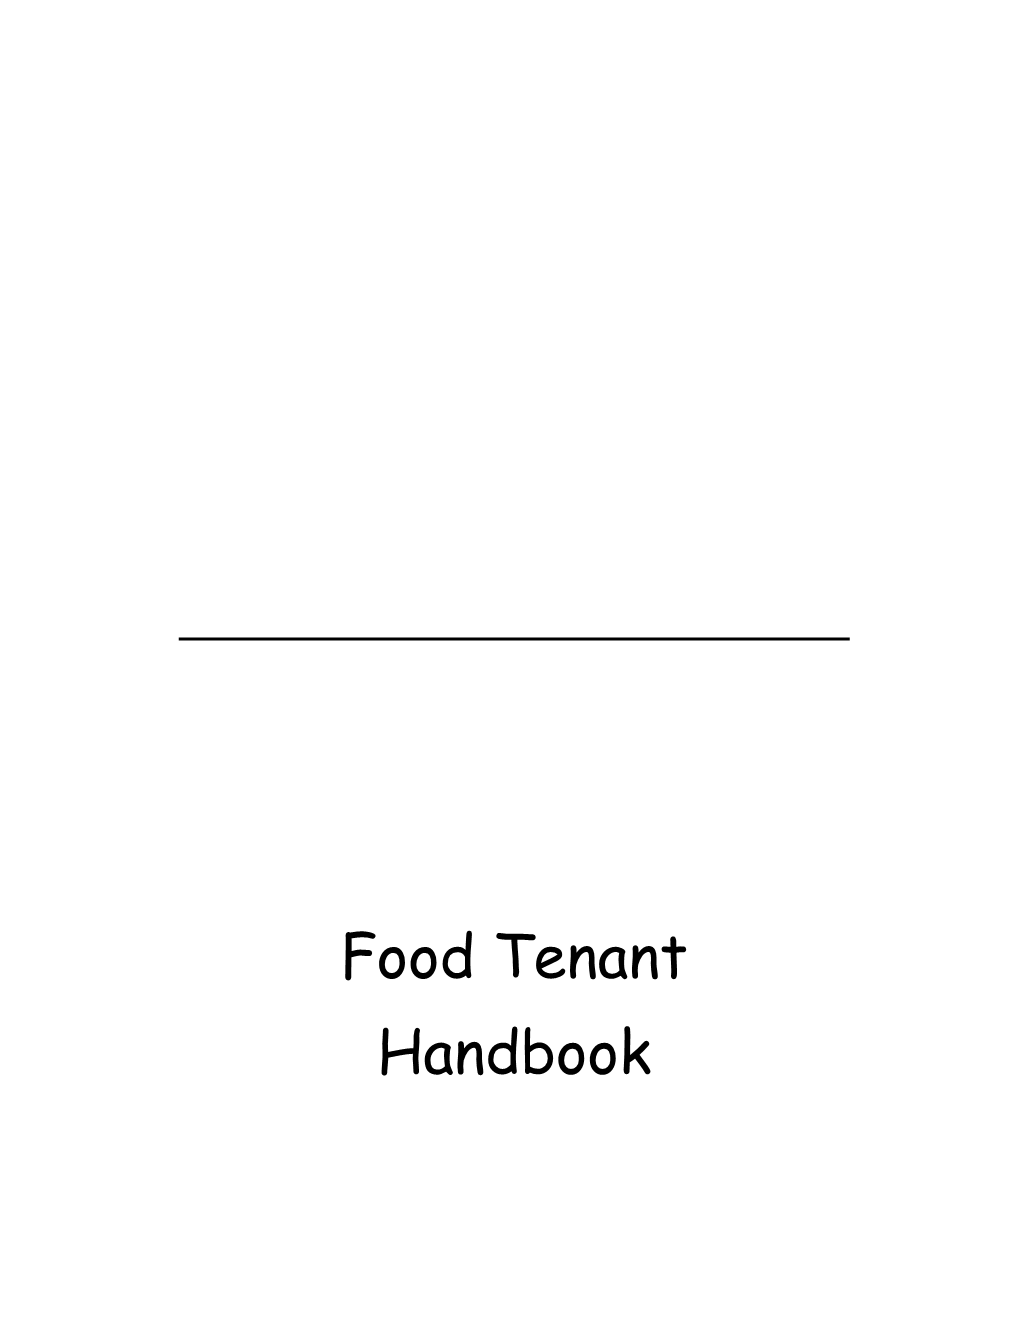 Food Handbook Working